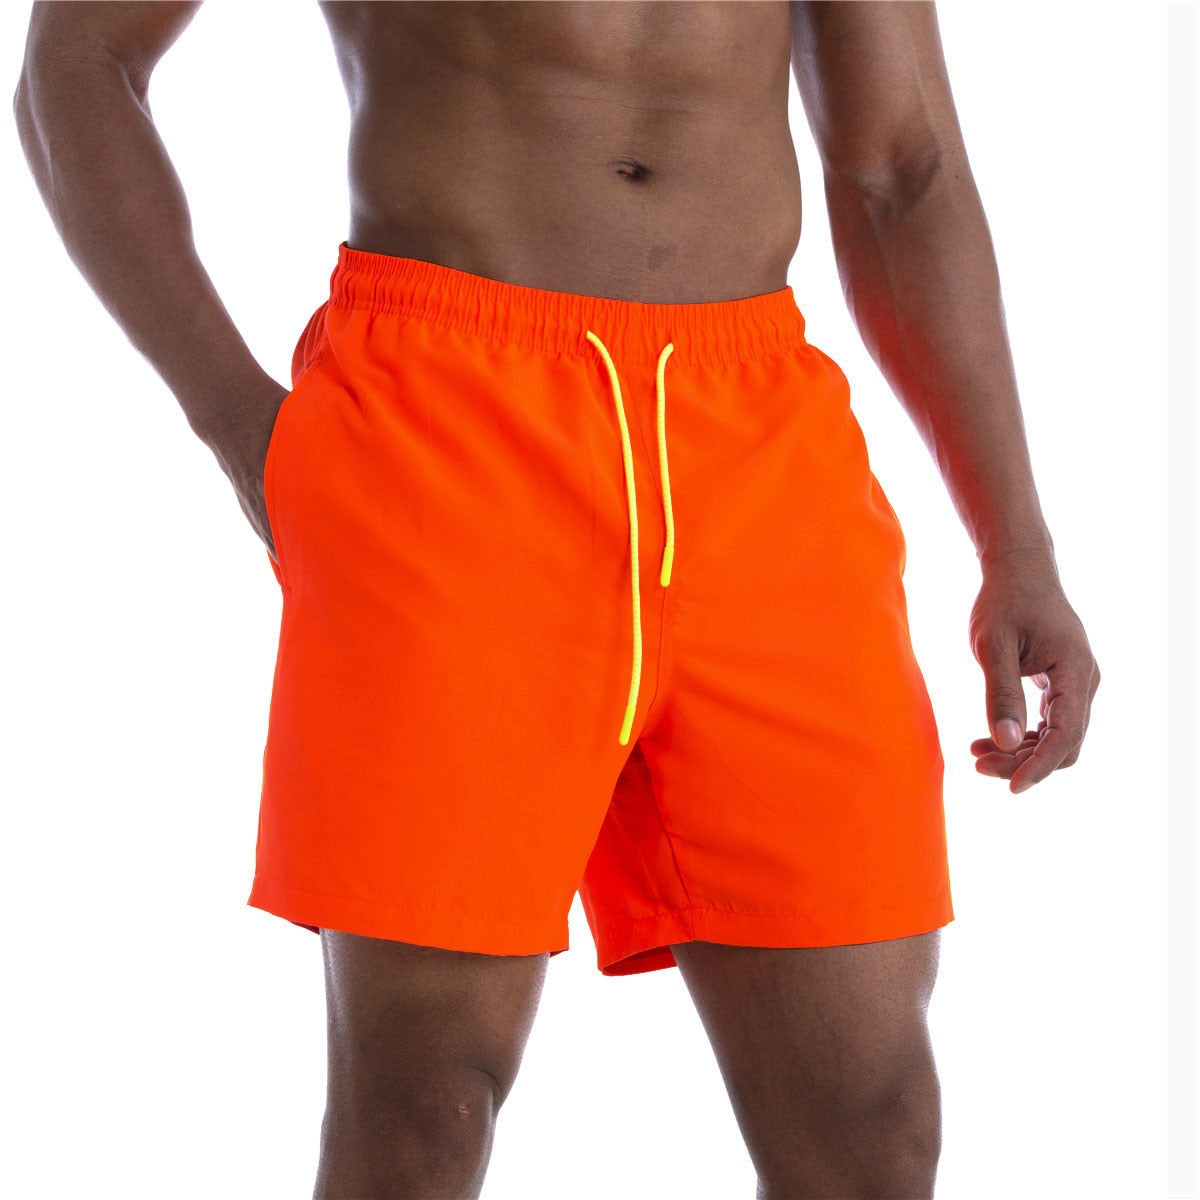 Acheter orange02 Swimming Shorts for Men elastic waist and drawstring